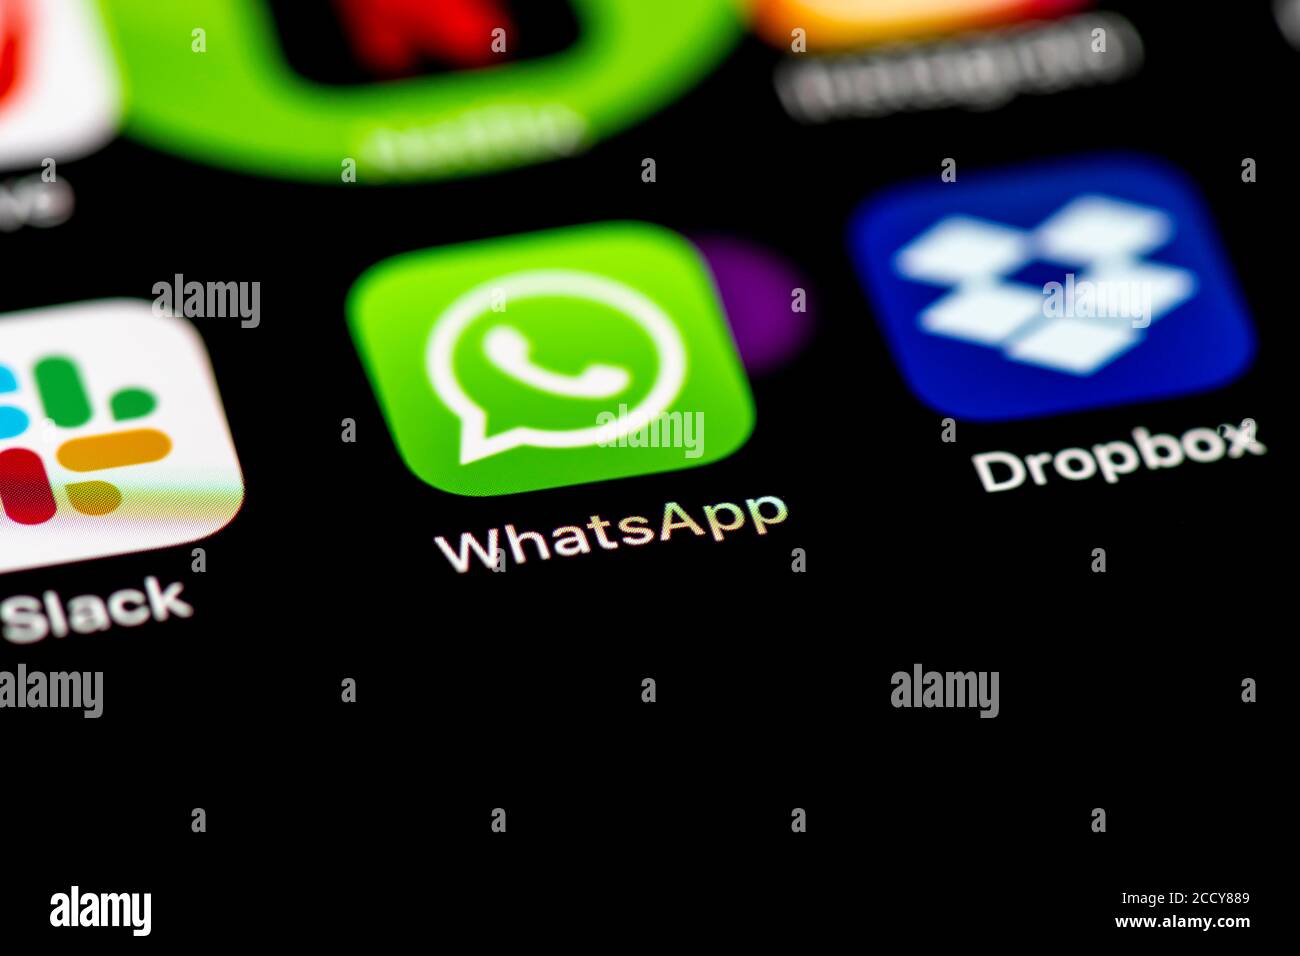 WhatsApp, icônes d'application sur un écran de téléphone mobile, iPhone, smartphone, gros plan, plein écran Banque D'Images